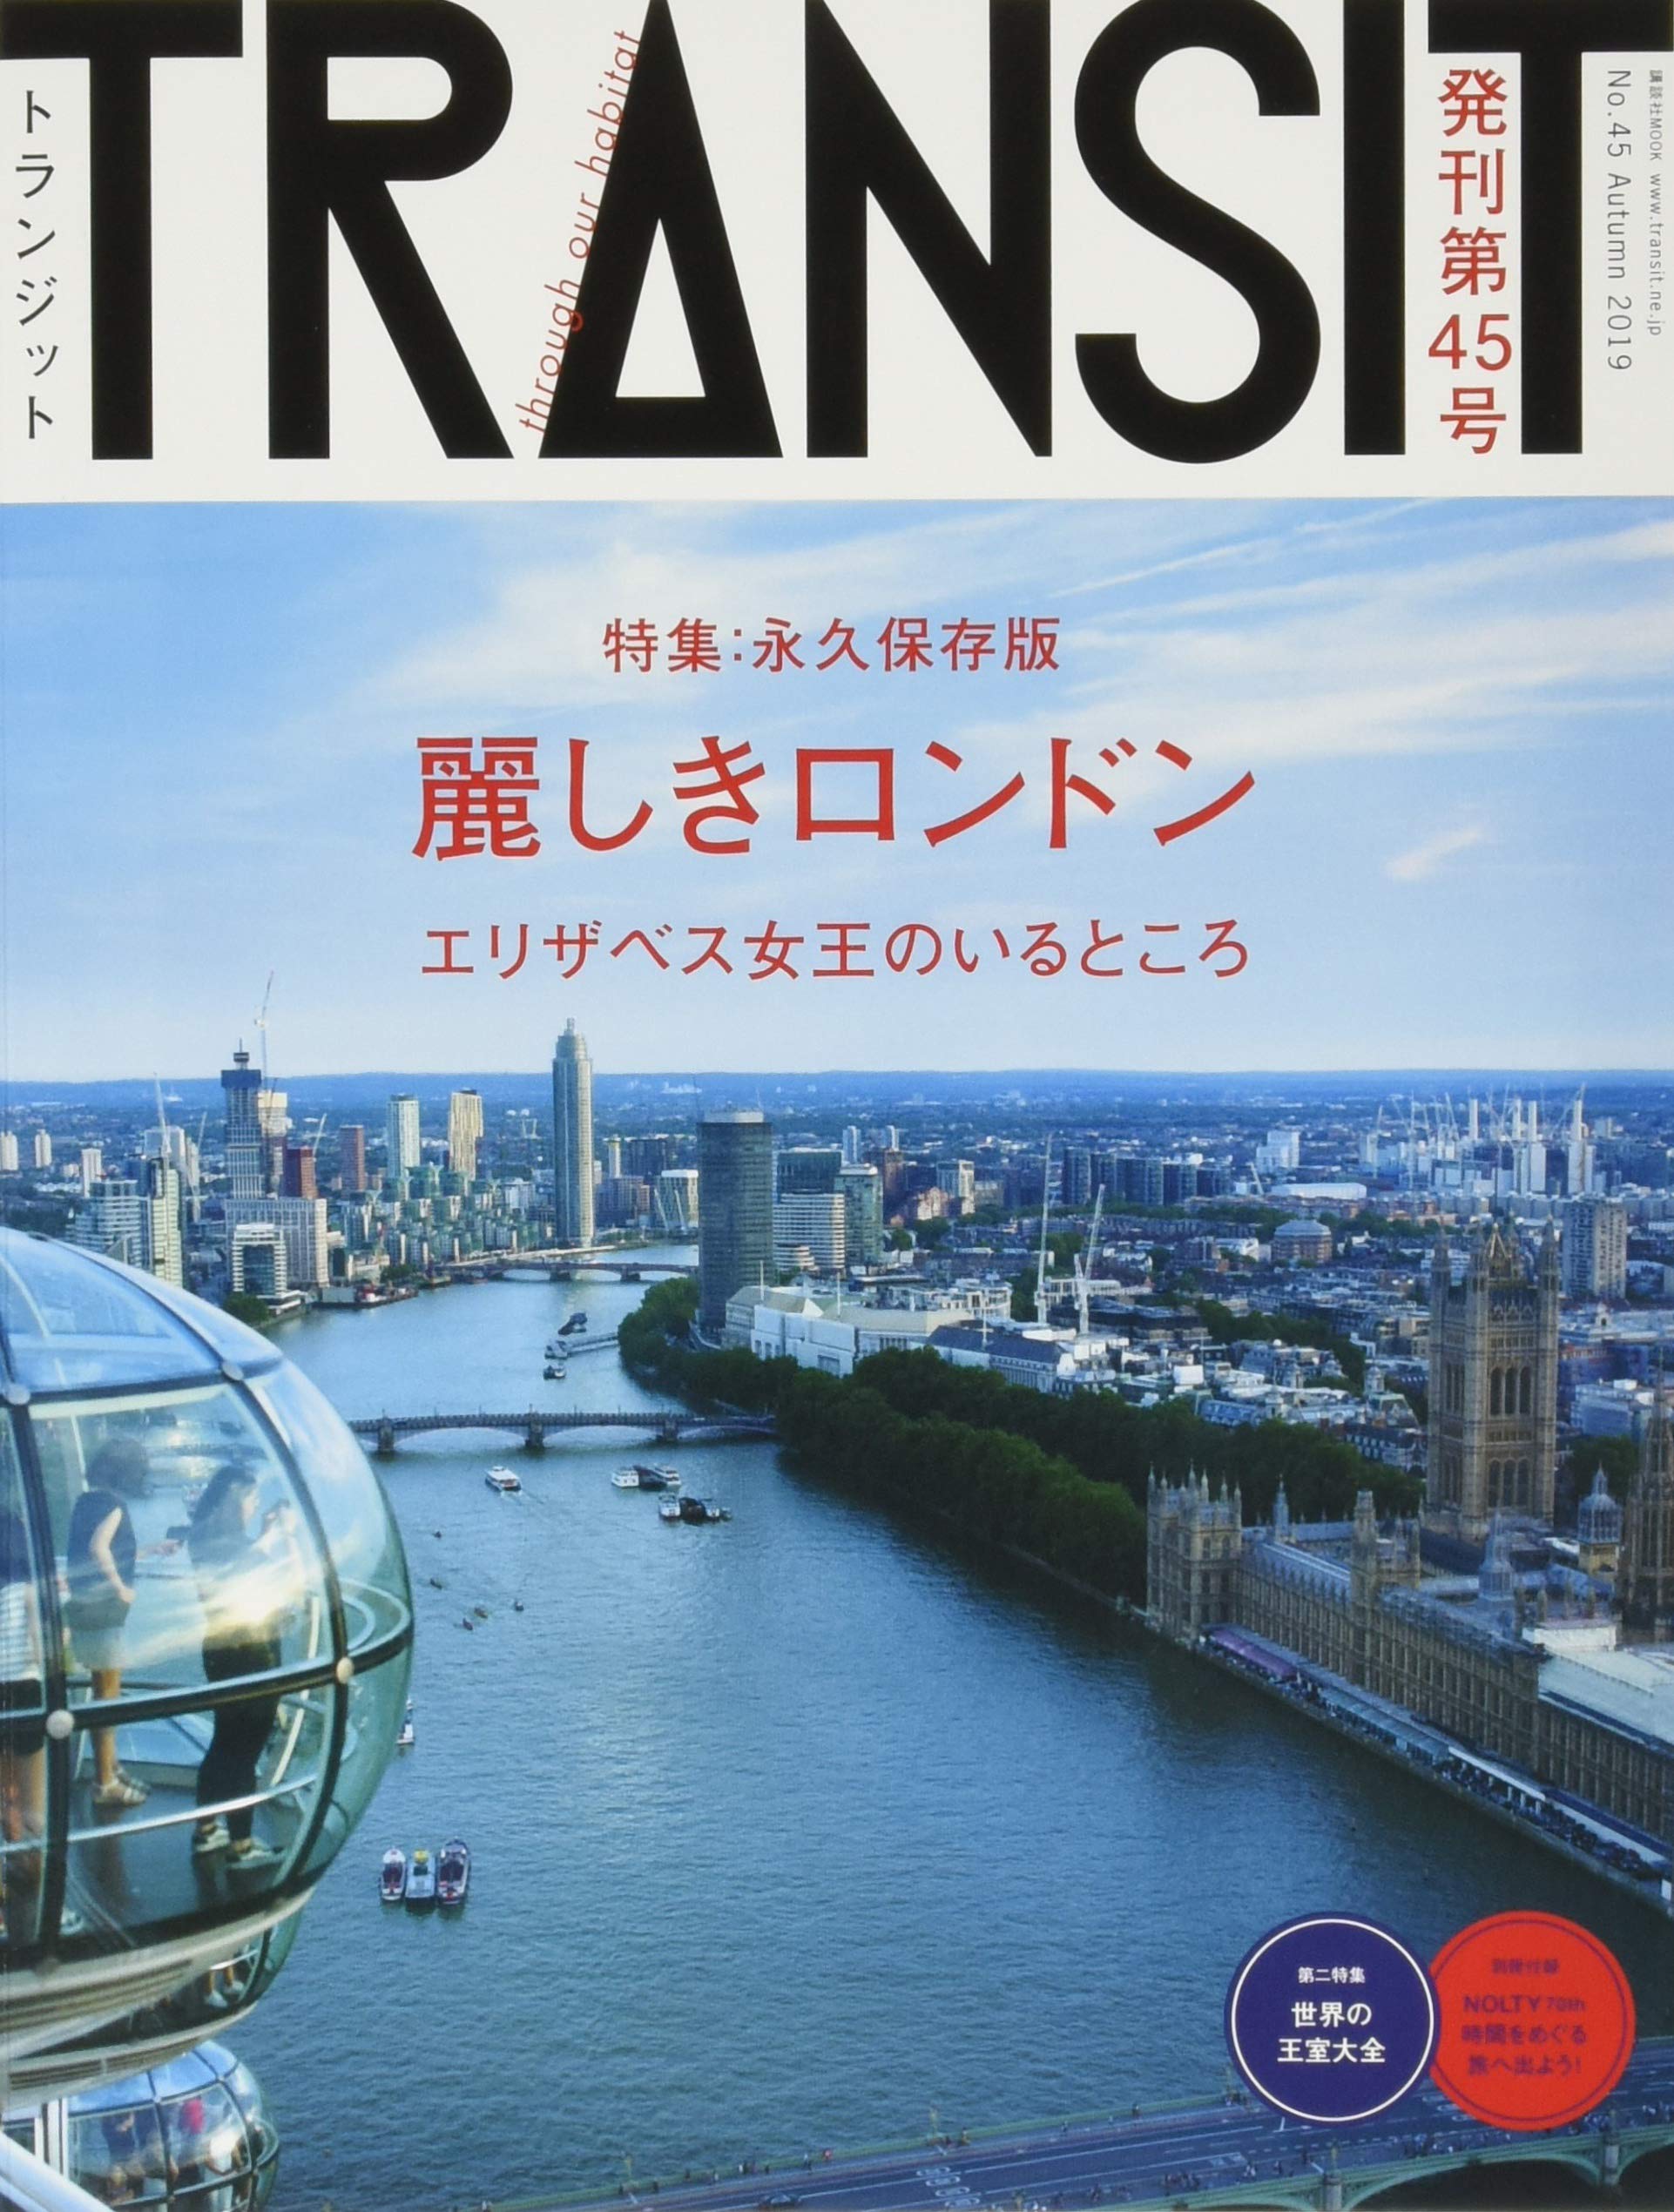 定番系からお洒落な雑誌まで 海外旅行好きにおすすめの旅行雑誌 9選 Edit